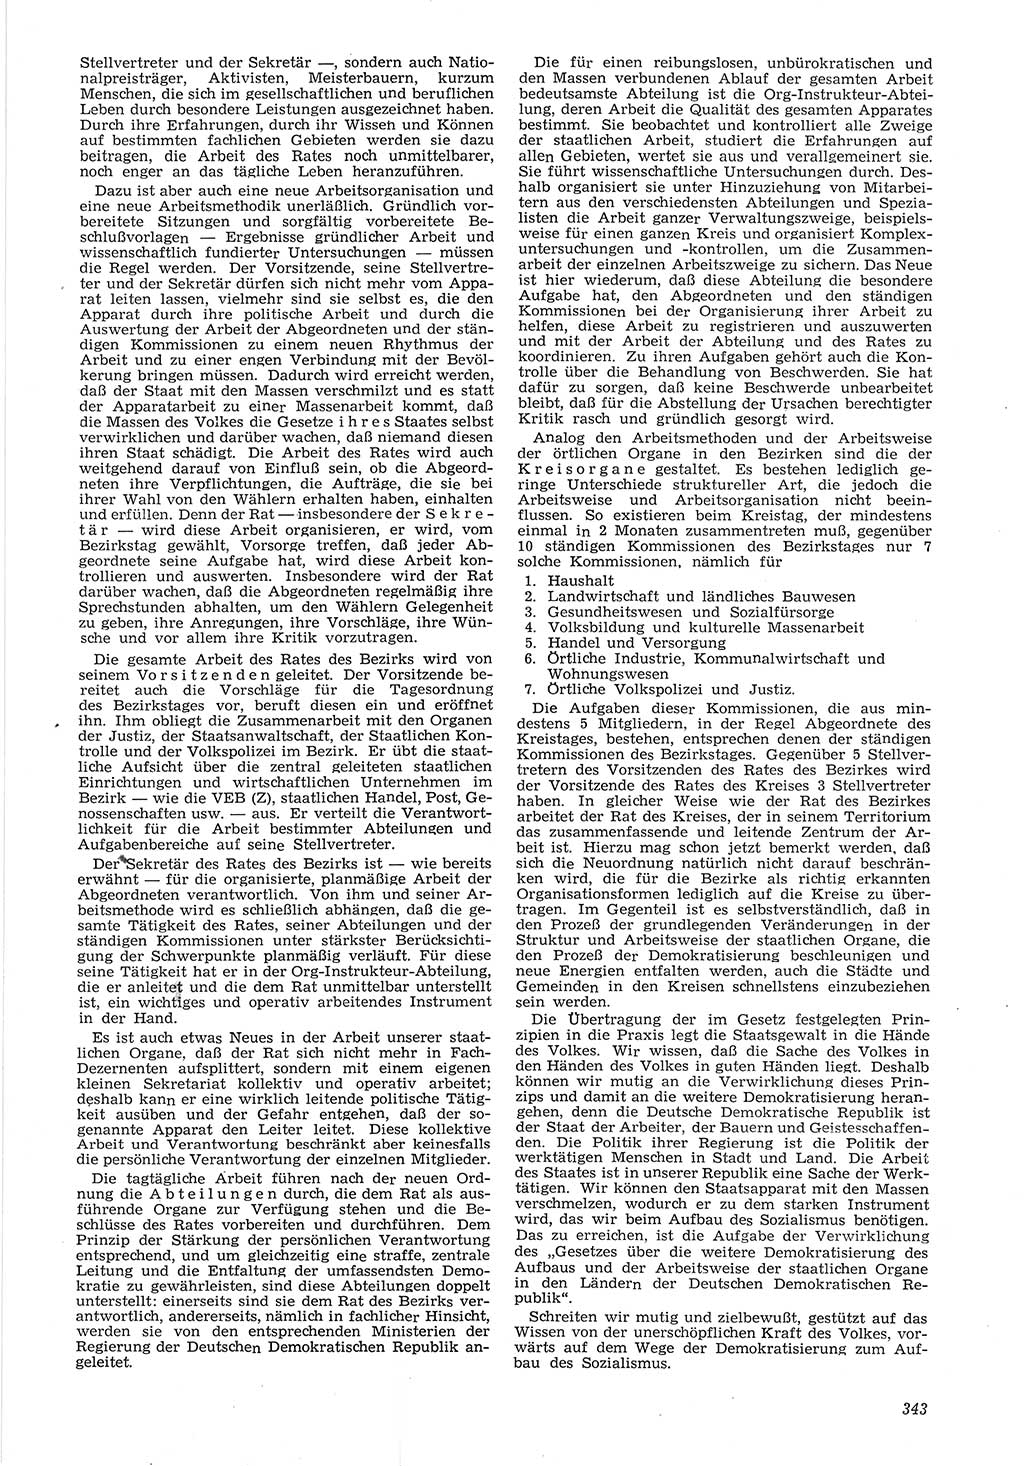 Neue Justiz (NJ), Zeitschrift für Recht und Rechtswissenschaft [Deutsche Demokratische Republik (DDR)], 6. Jahrgang 1952, Seite 343 (NJ DDR 1952, S. 343)